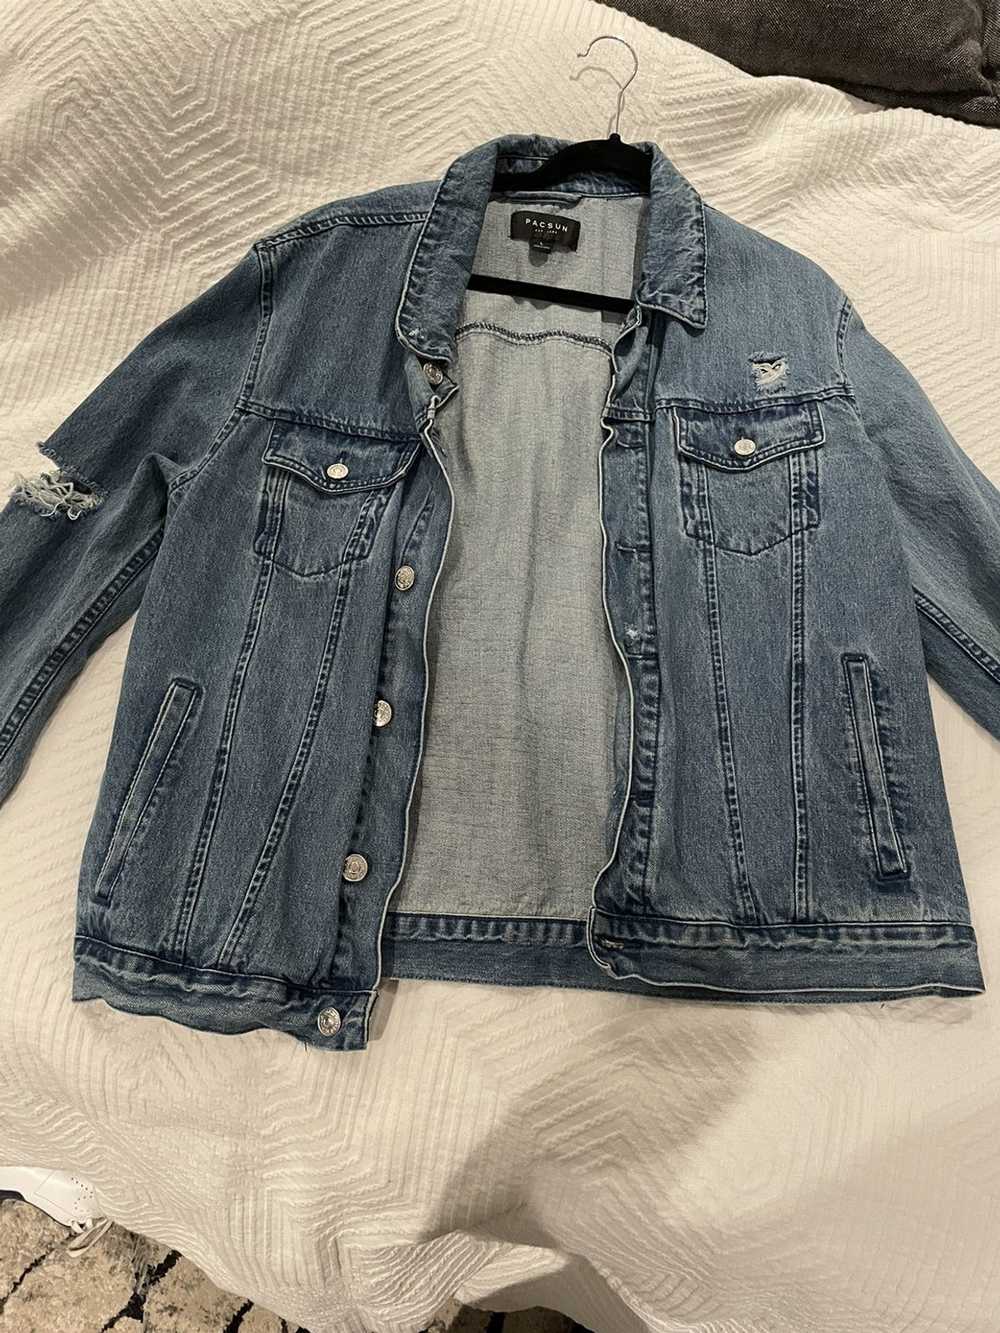 Pacsun Pacsun jean jacket - image 1